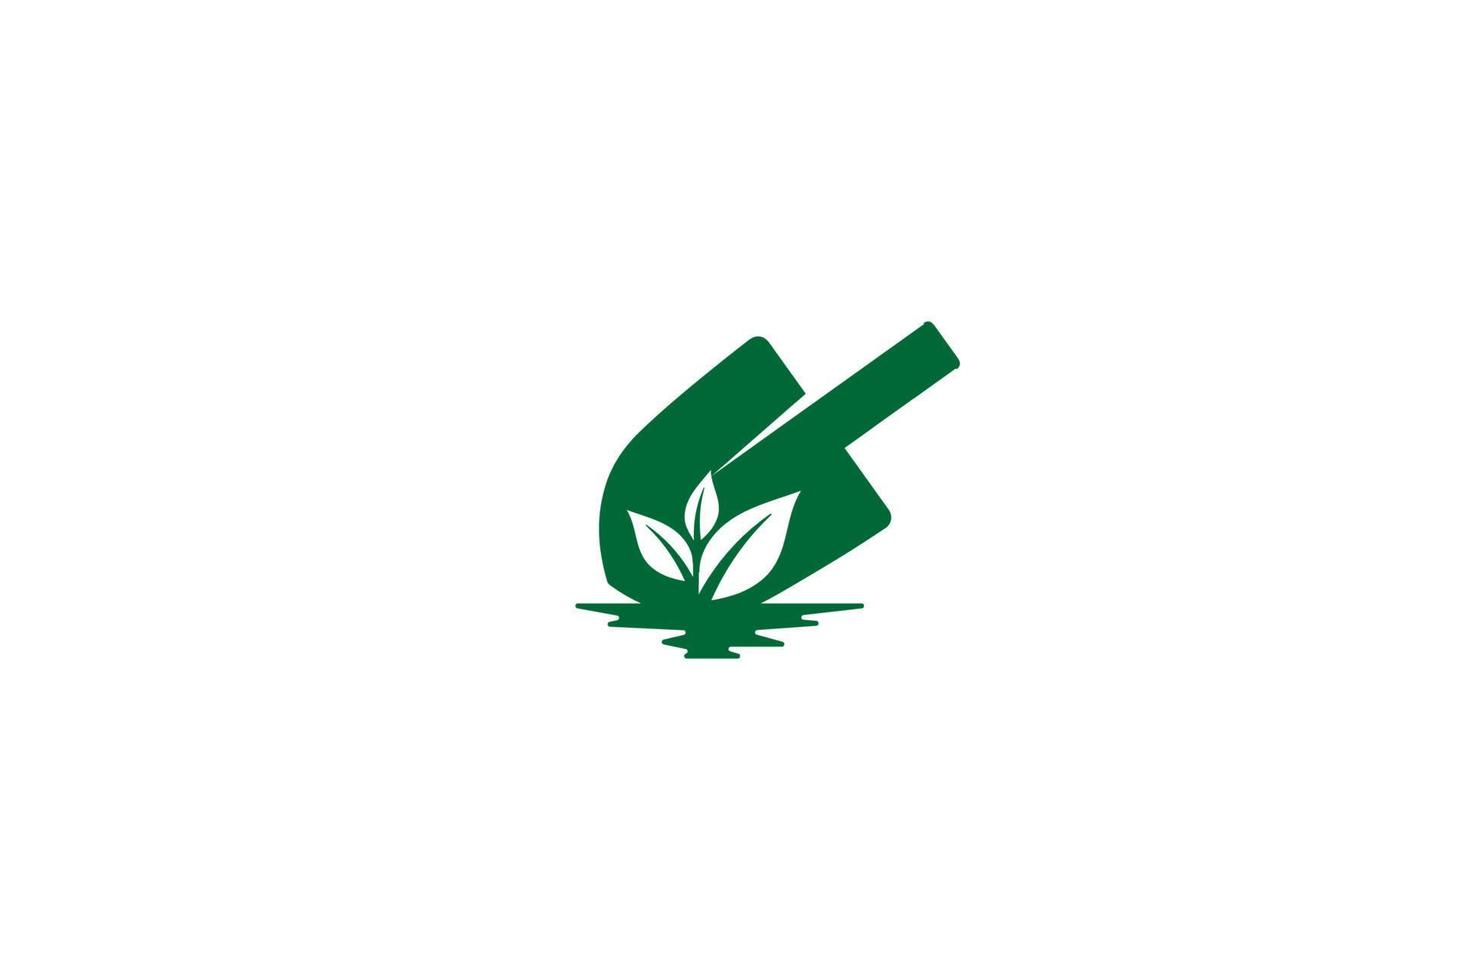 Shovel and Leaf for Garden Logo Design vector